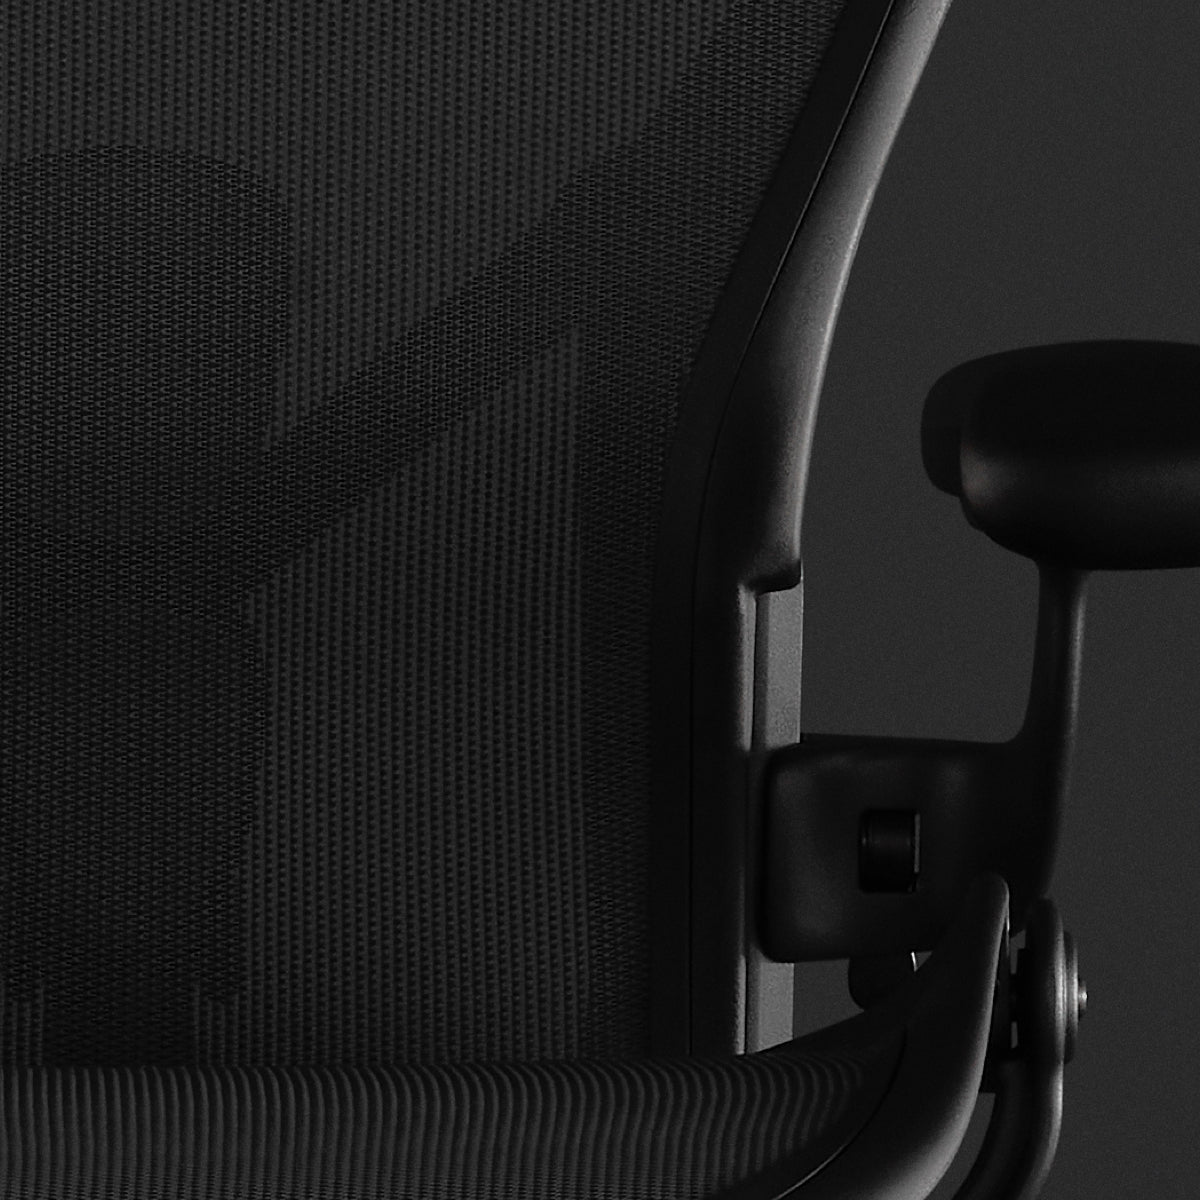 特写镜头：Aeron座椅上的8Z Pellicle悬架支撑材料。